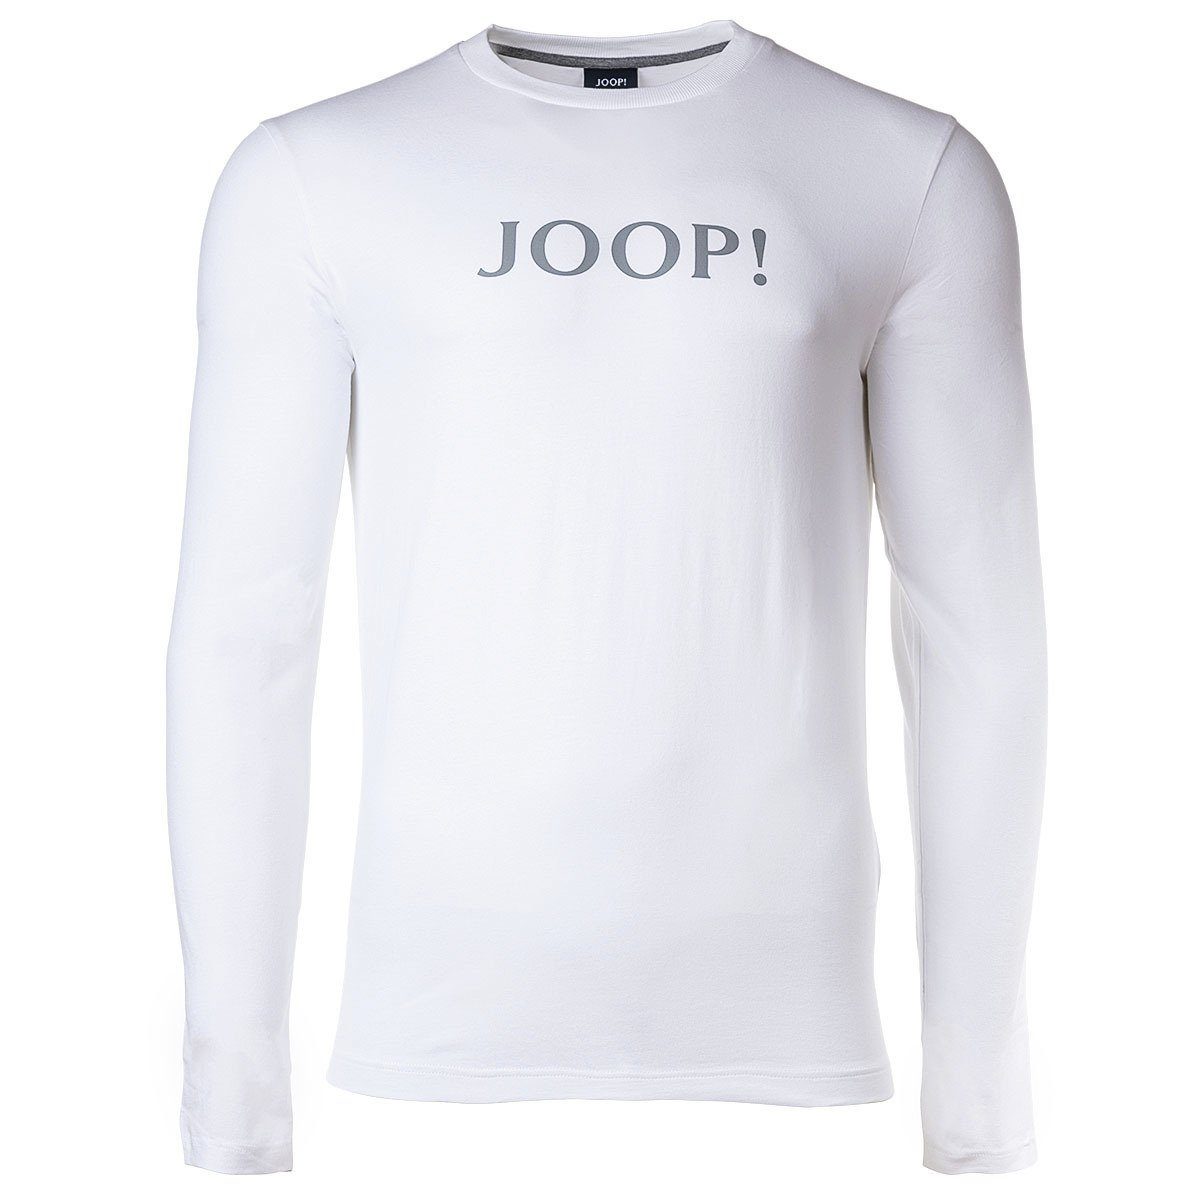 JOOP! T-Shirt Herren Langarm-Shirt - Loungewear, Rundhals